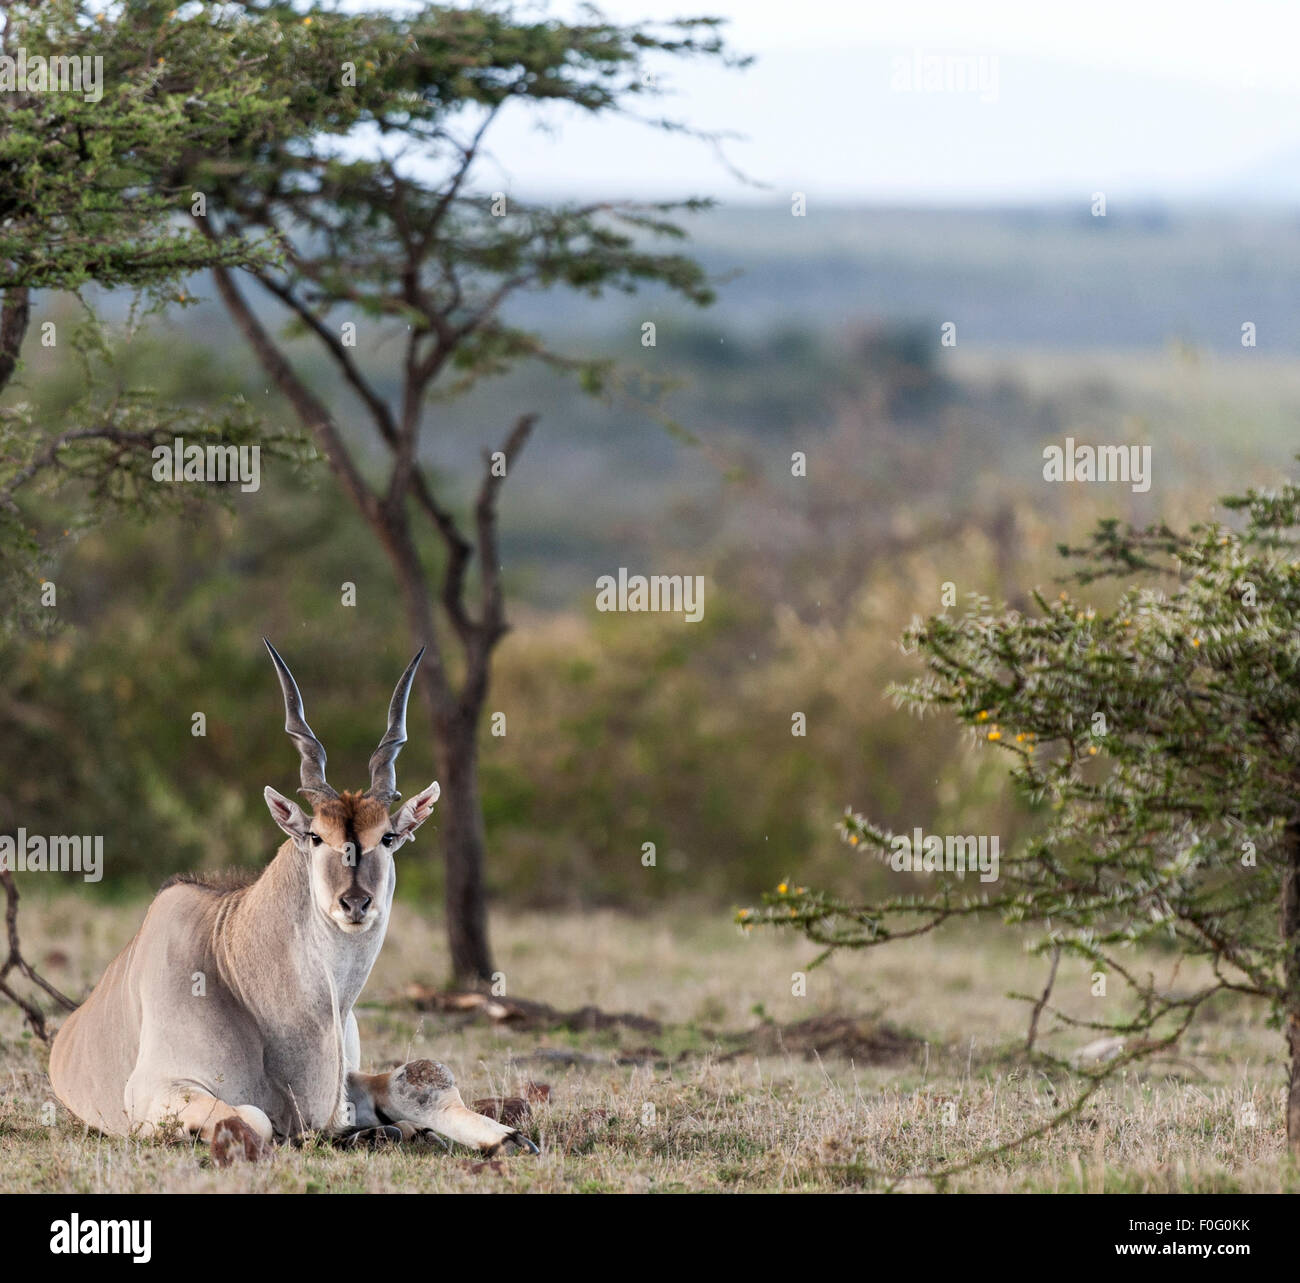 Common Eland sitting on the ground Mara Naboisho conservancy Kenya Africa Stock Photo